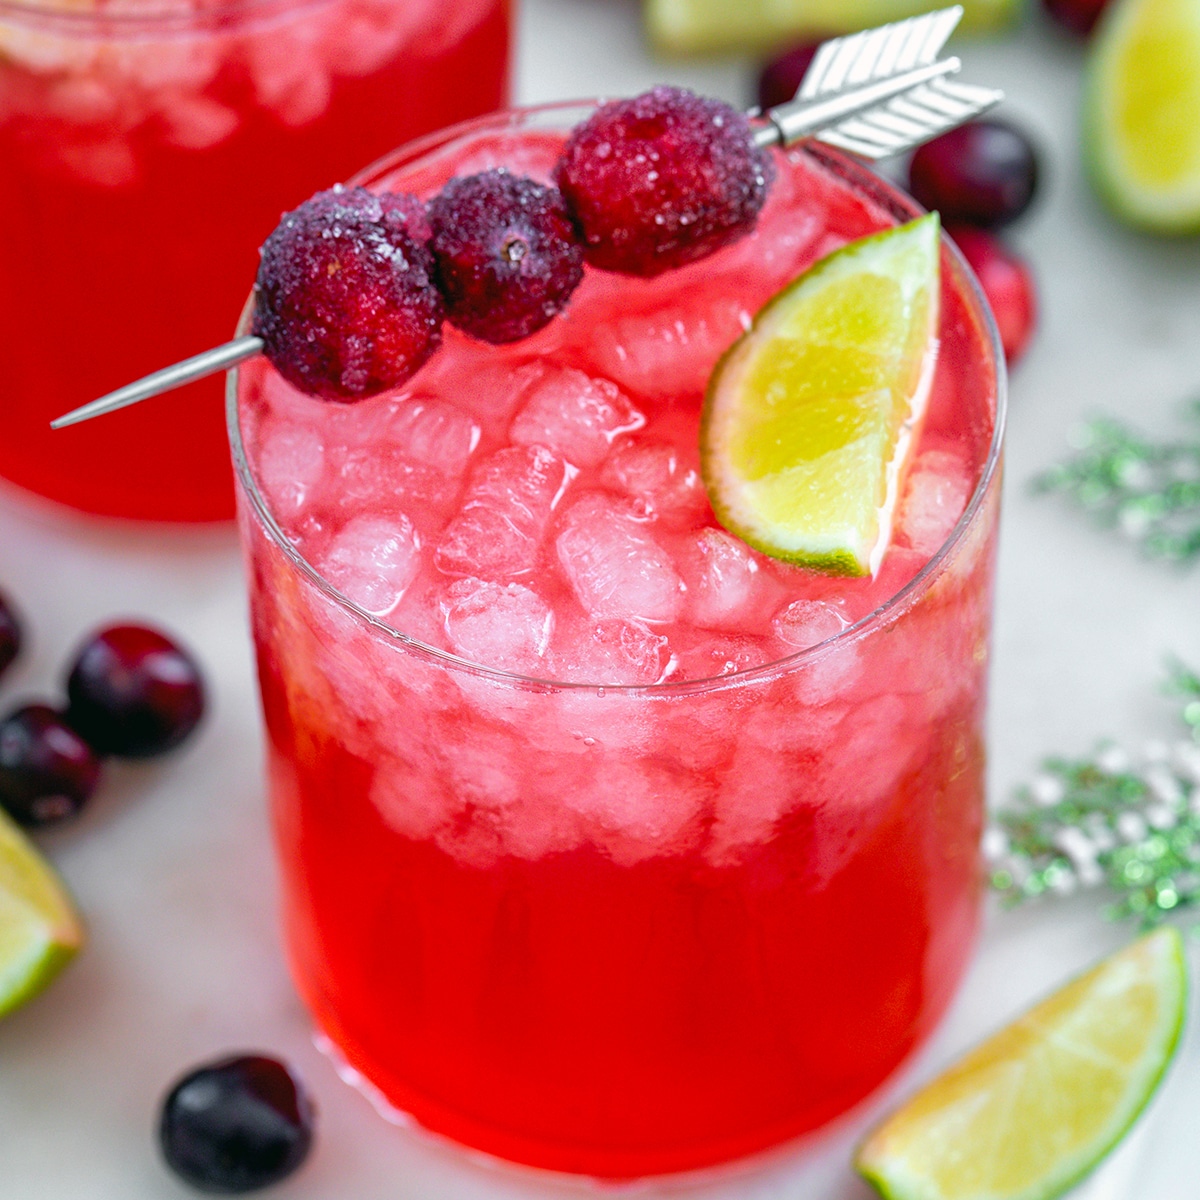 https://wearenotmartha.com/wp-content/uploads/Cranberry-Gin-Cocktail-Featured.jpg